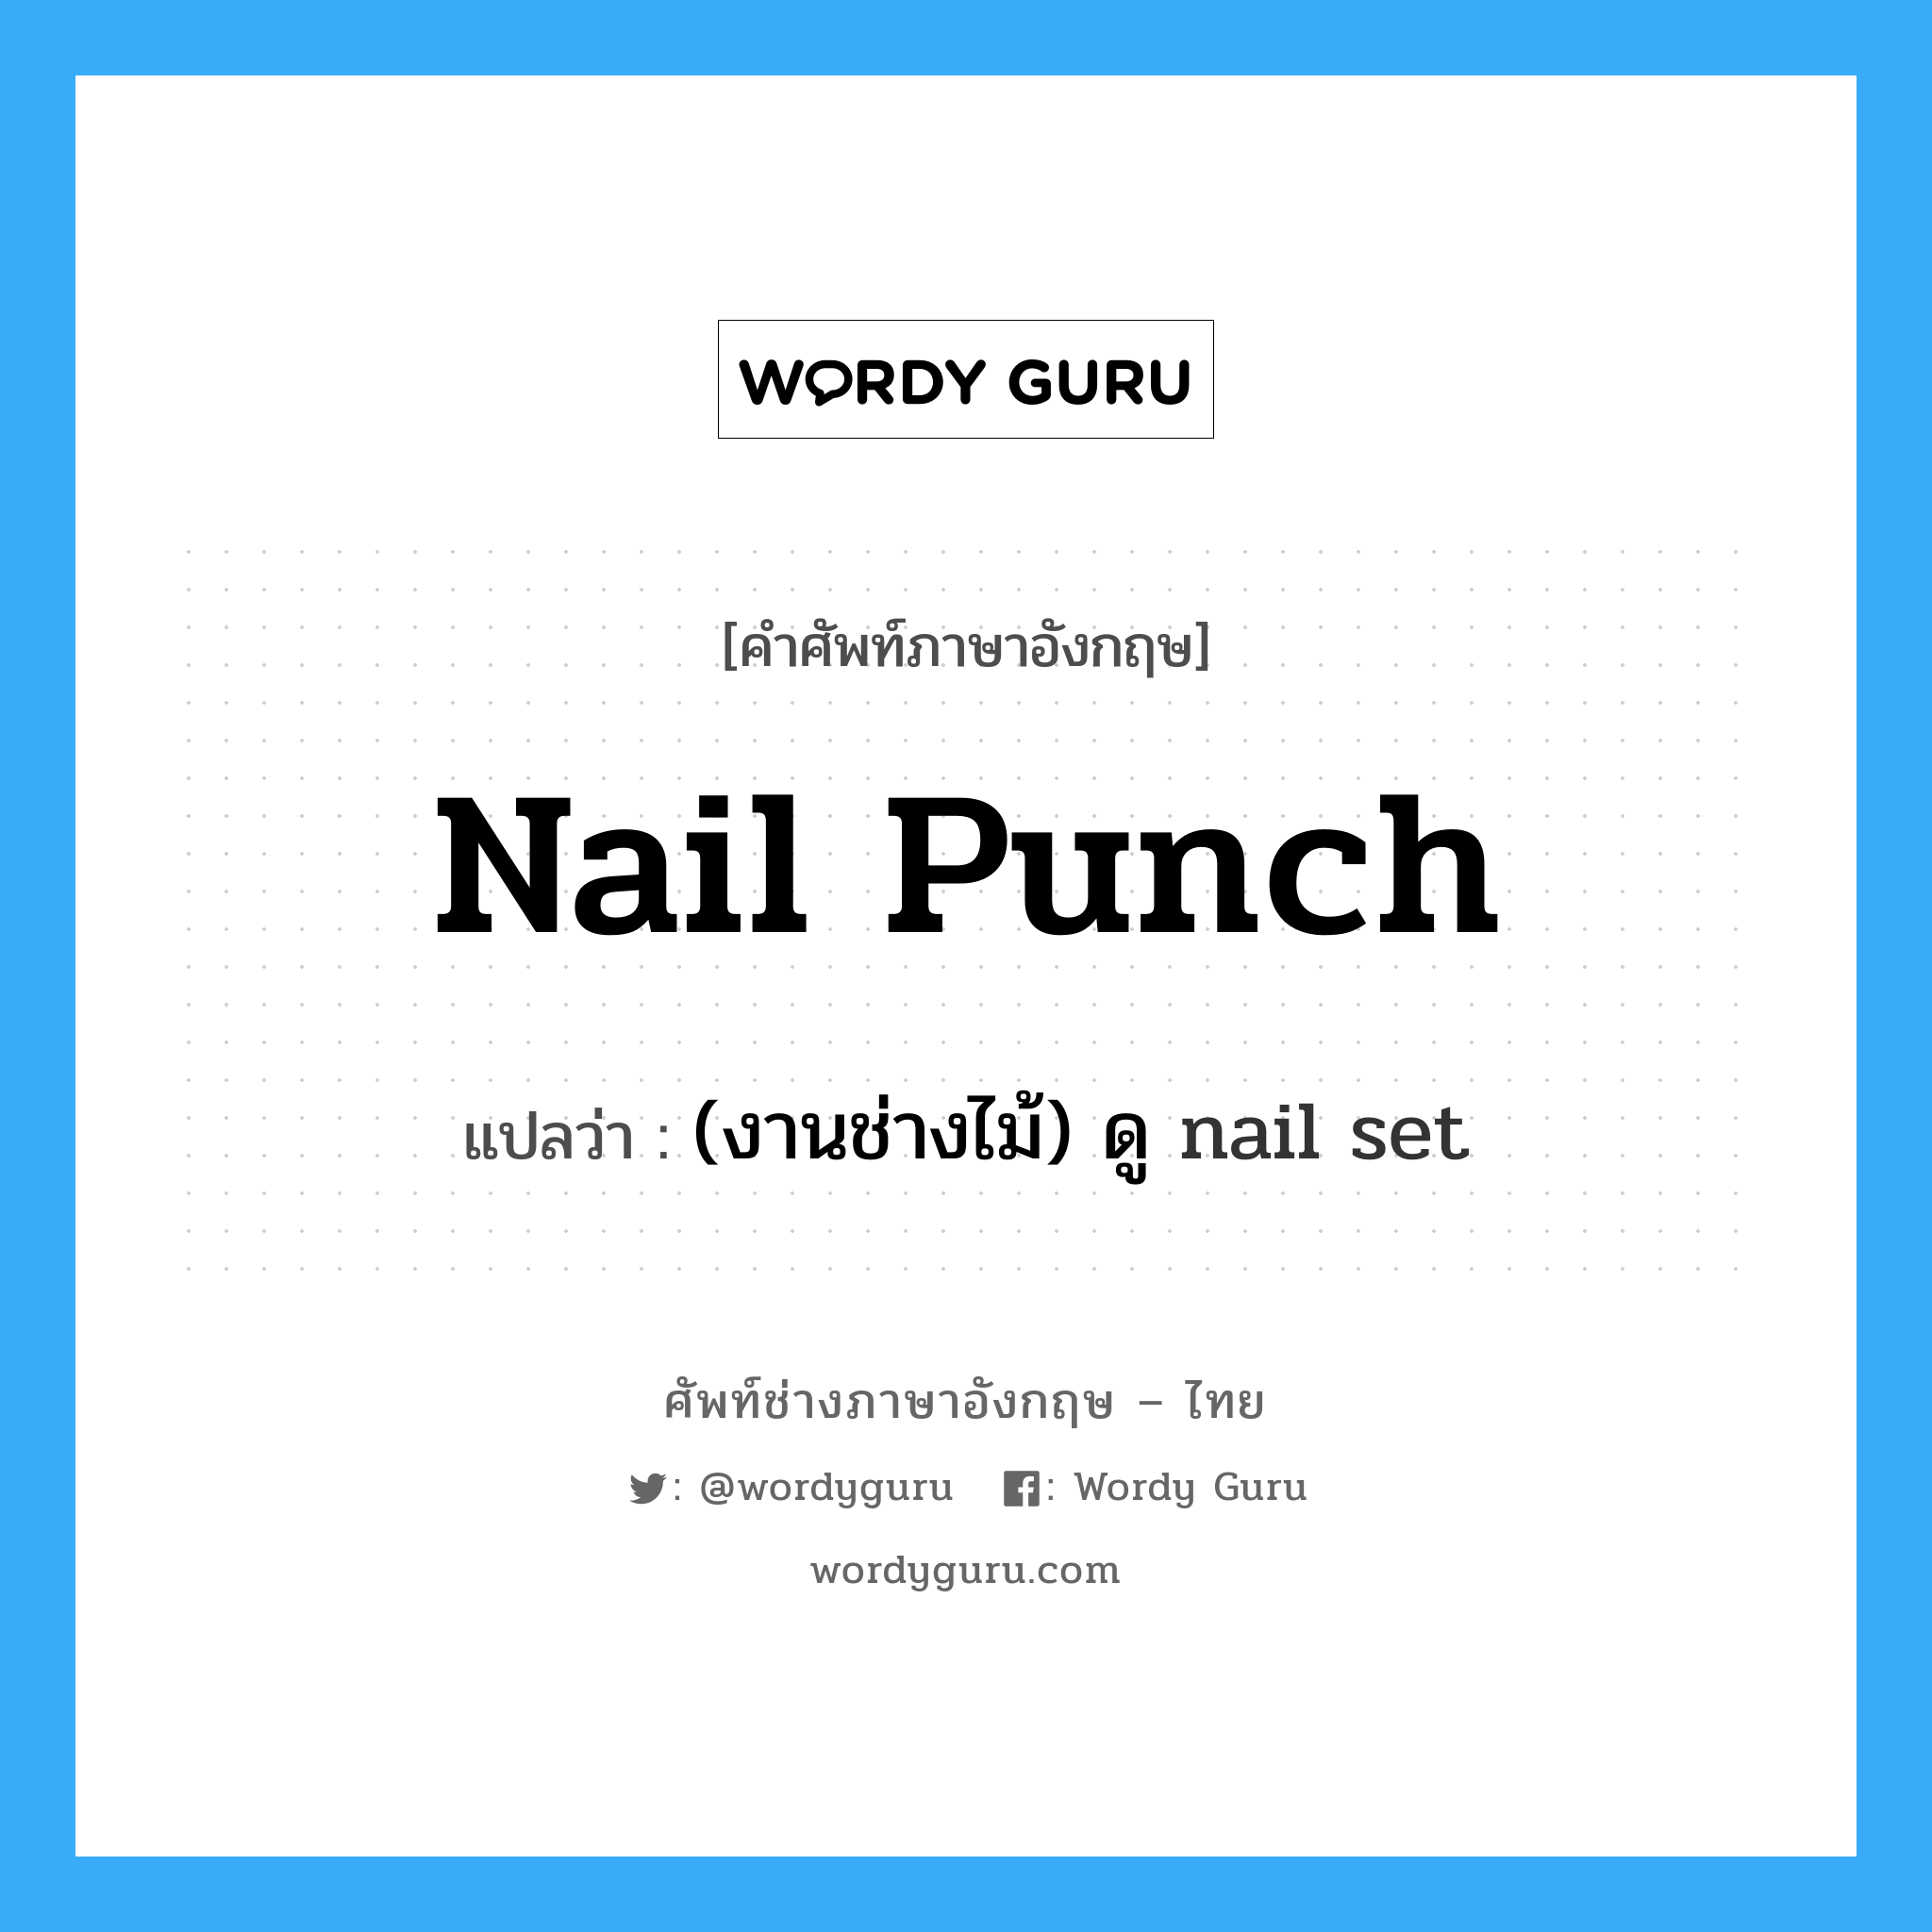 (งานช่างไม้) ดู nail set ภาษาอังกฤษ?, คำศัพท์ช่างภาษาอังกฤษ - ไทย (งานช่างไม้) ดู nail set คำศัพท์ภาษาอังกฤษ (งานช่างไม้) ดู nail set แปลว่า nail punch